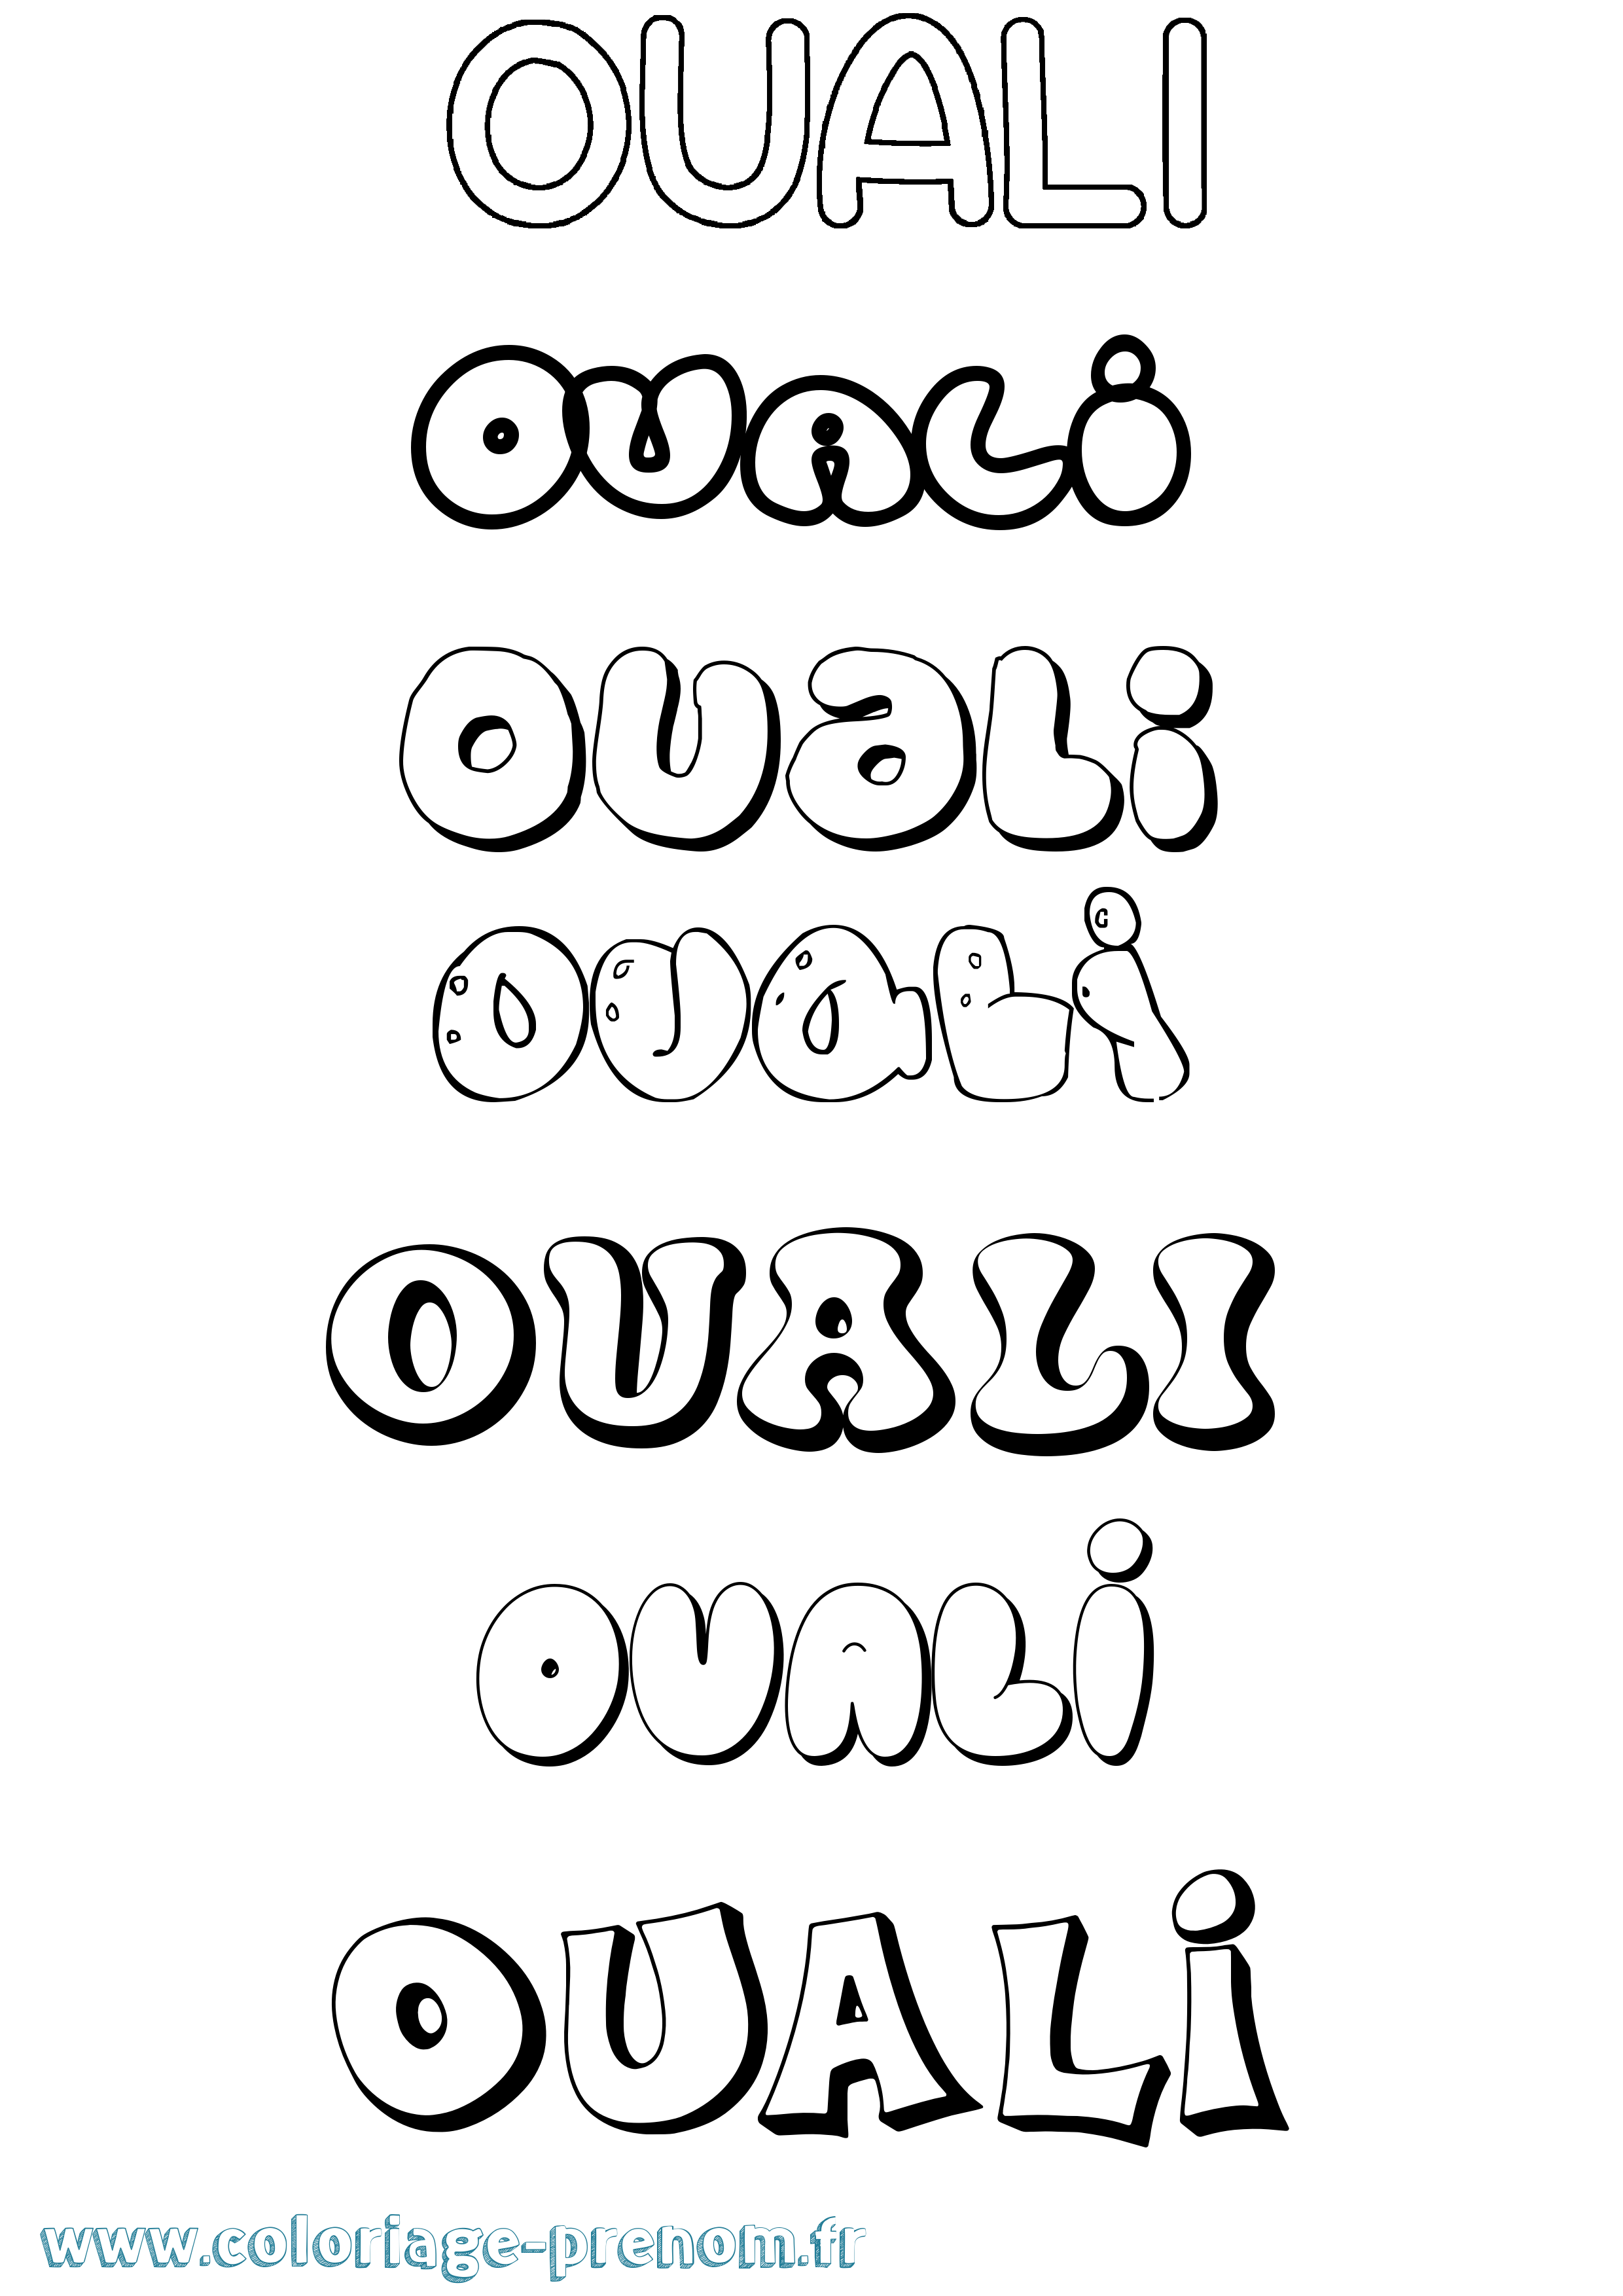 Coloriage prénom Ouali Bubble